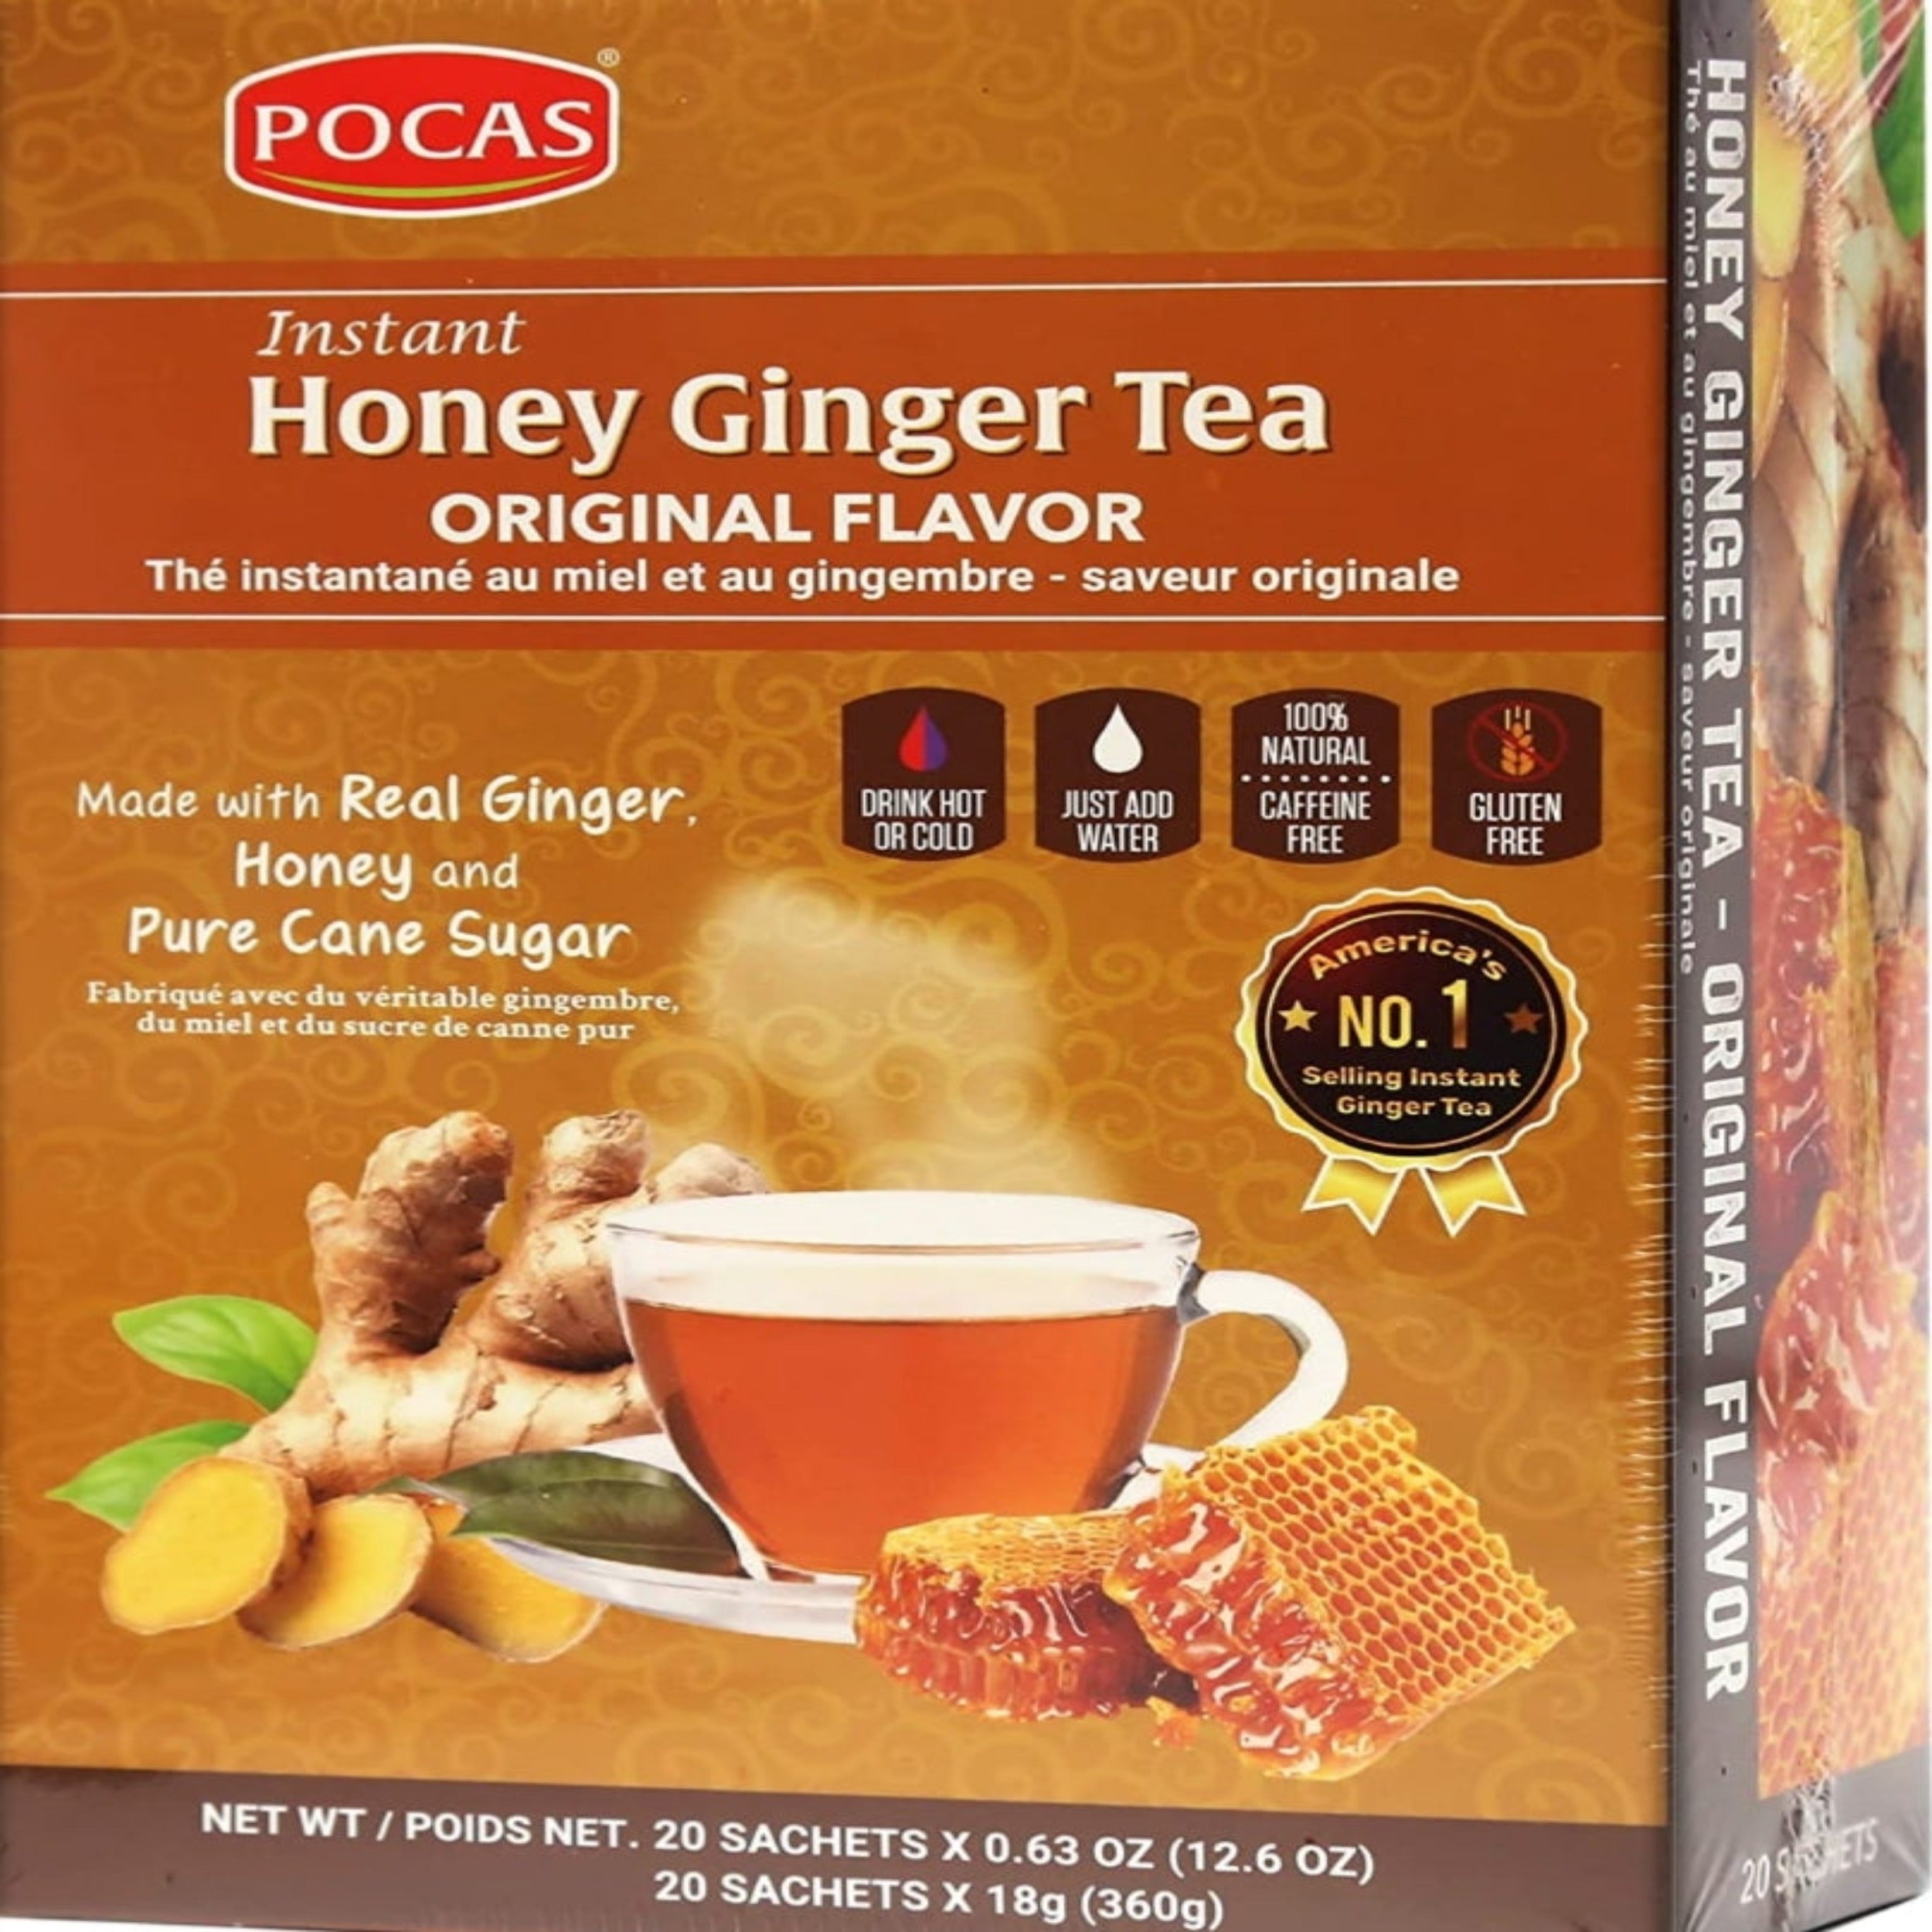 Pocas Honey Ginger Tea Original Flavor